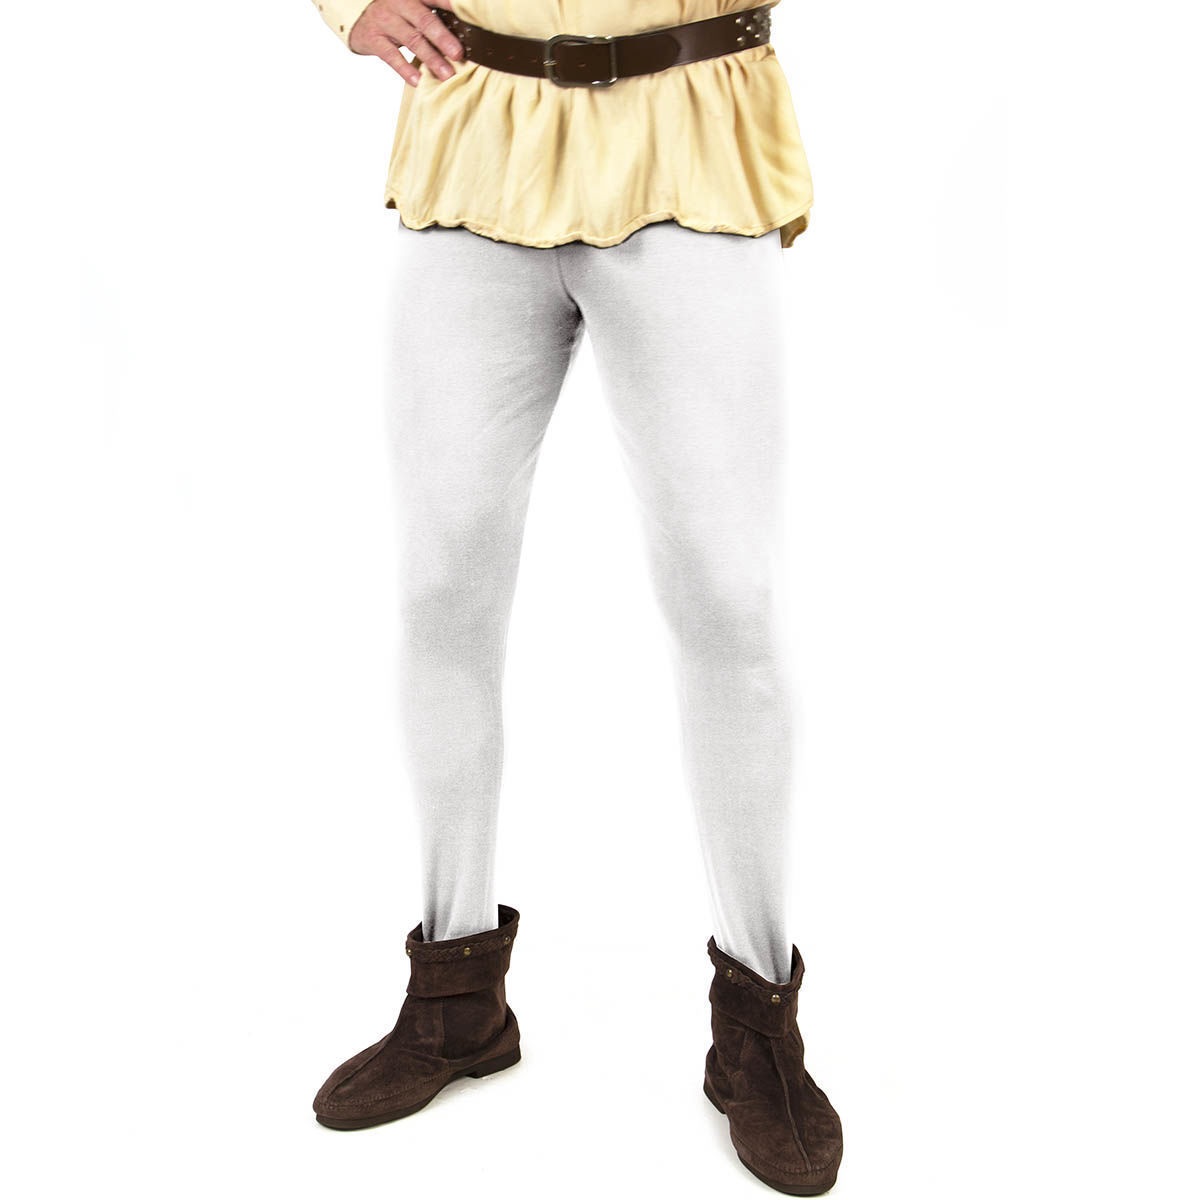 Mittelalterliche Pantalons, Farbe Weiß, Größe S